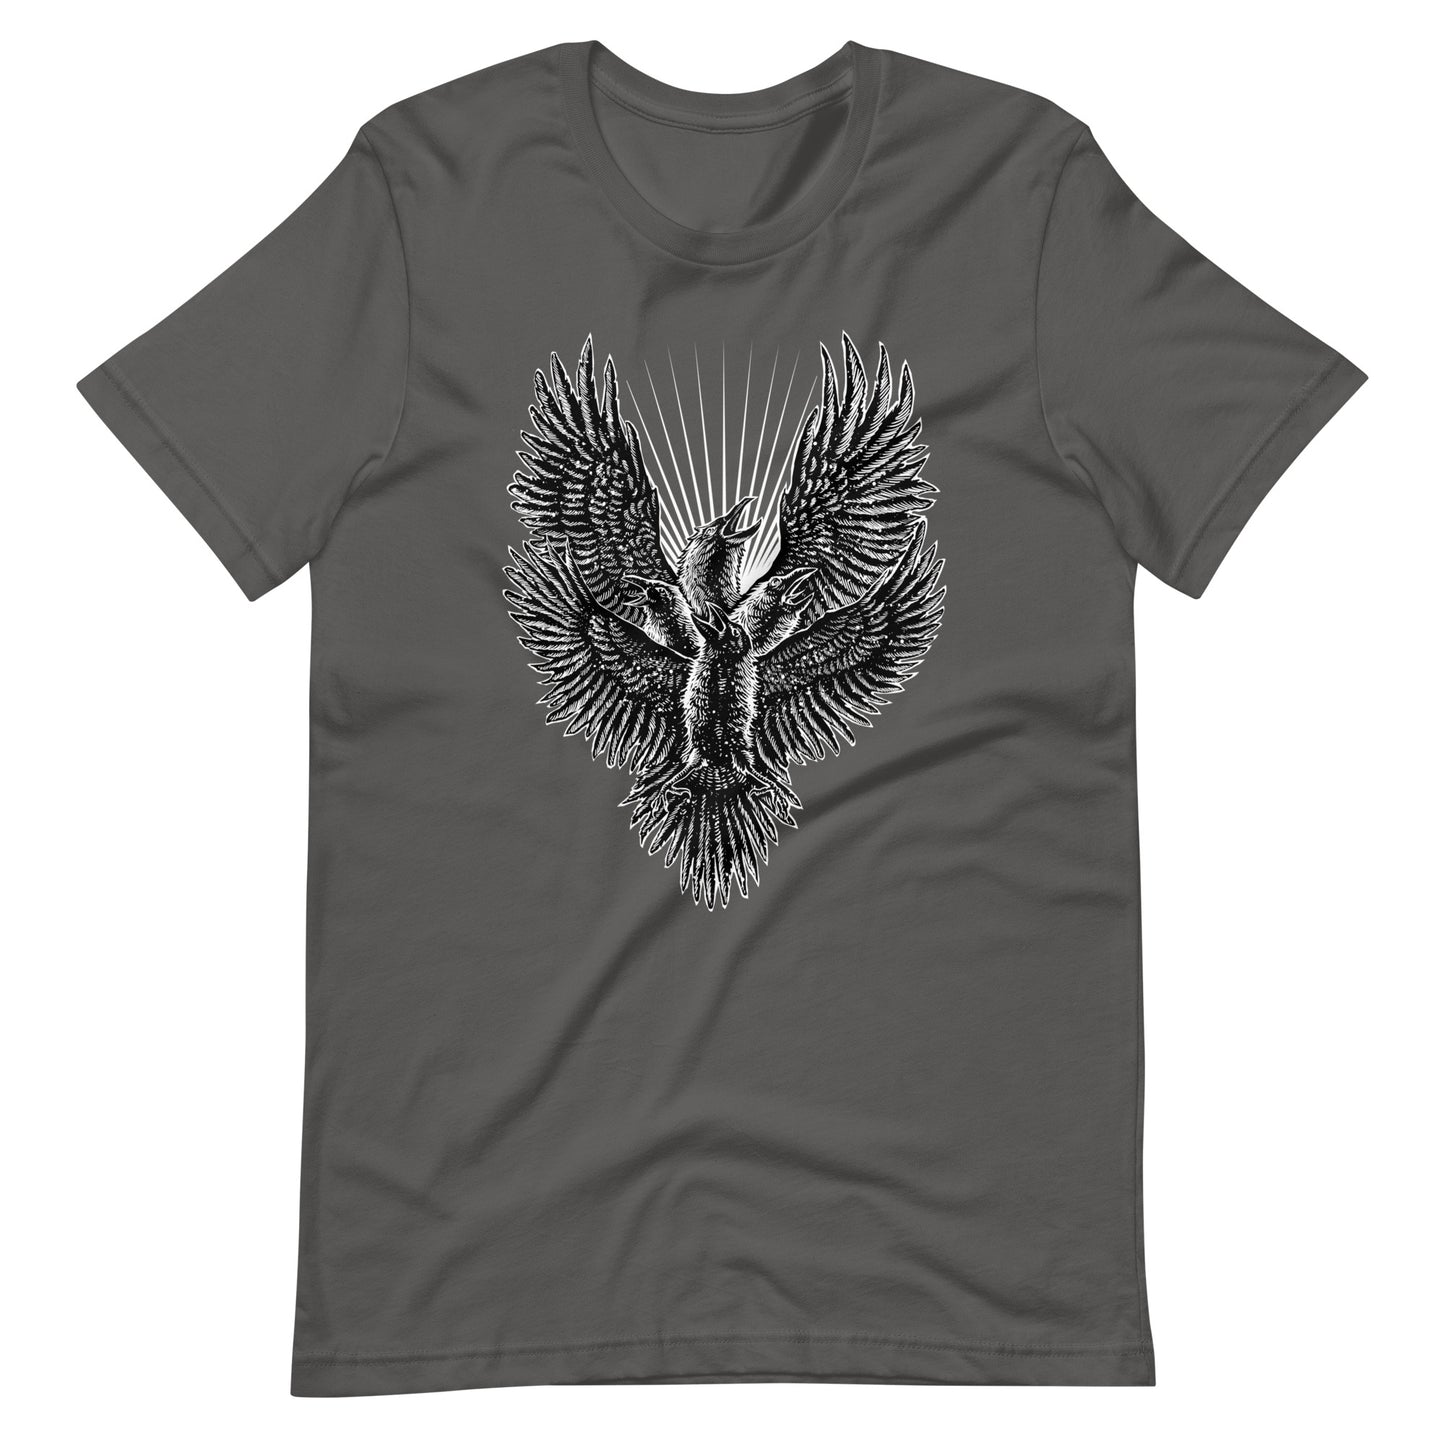 Luminous Crow - Men's t-shirt - Asphalt Front